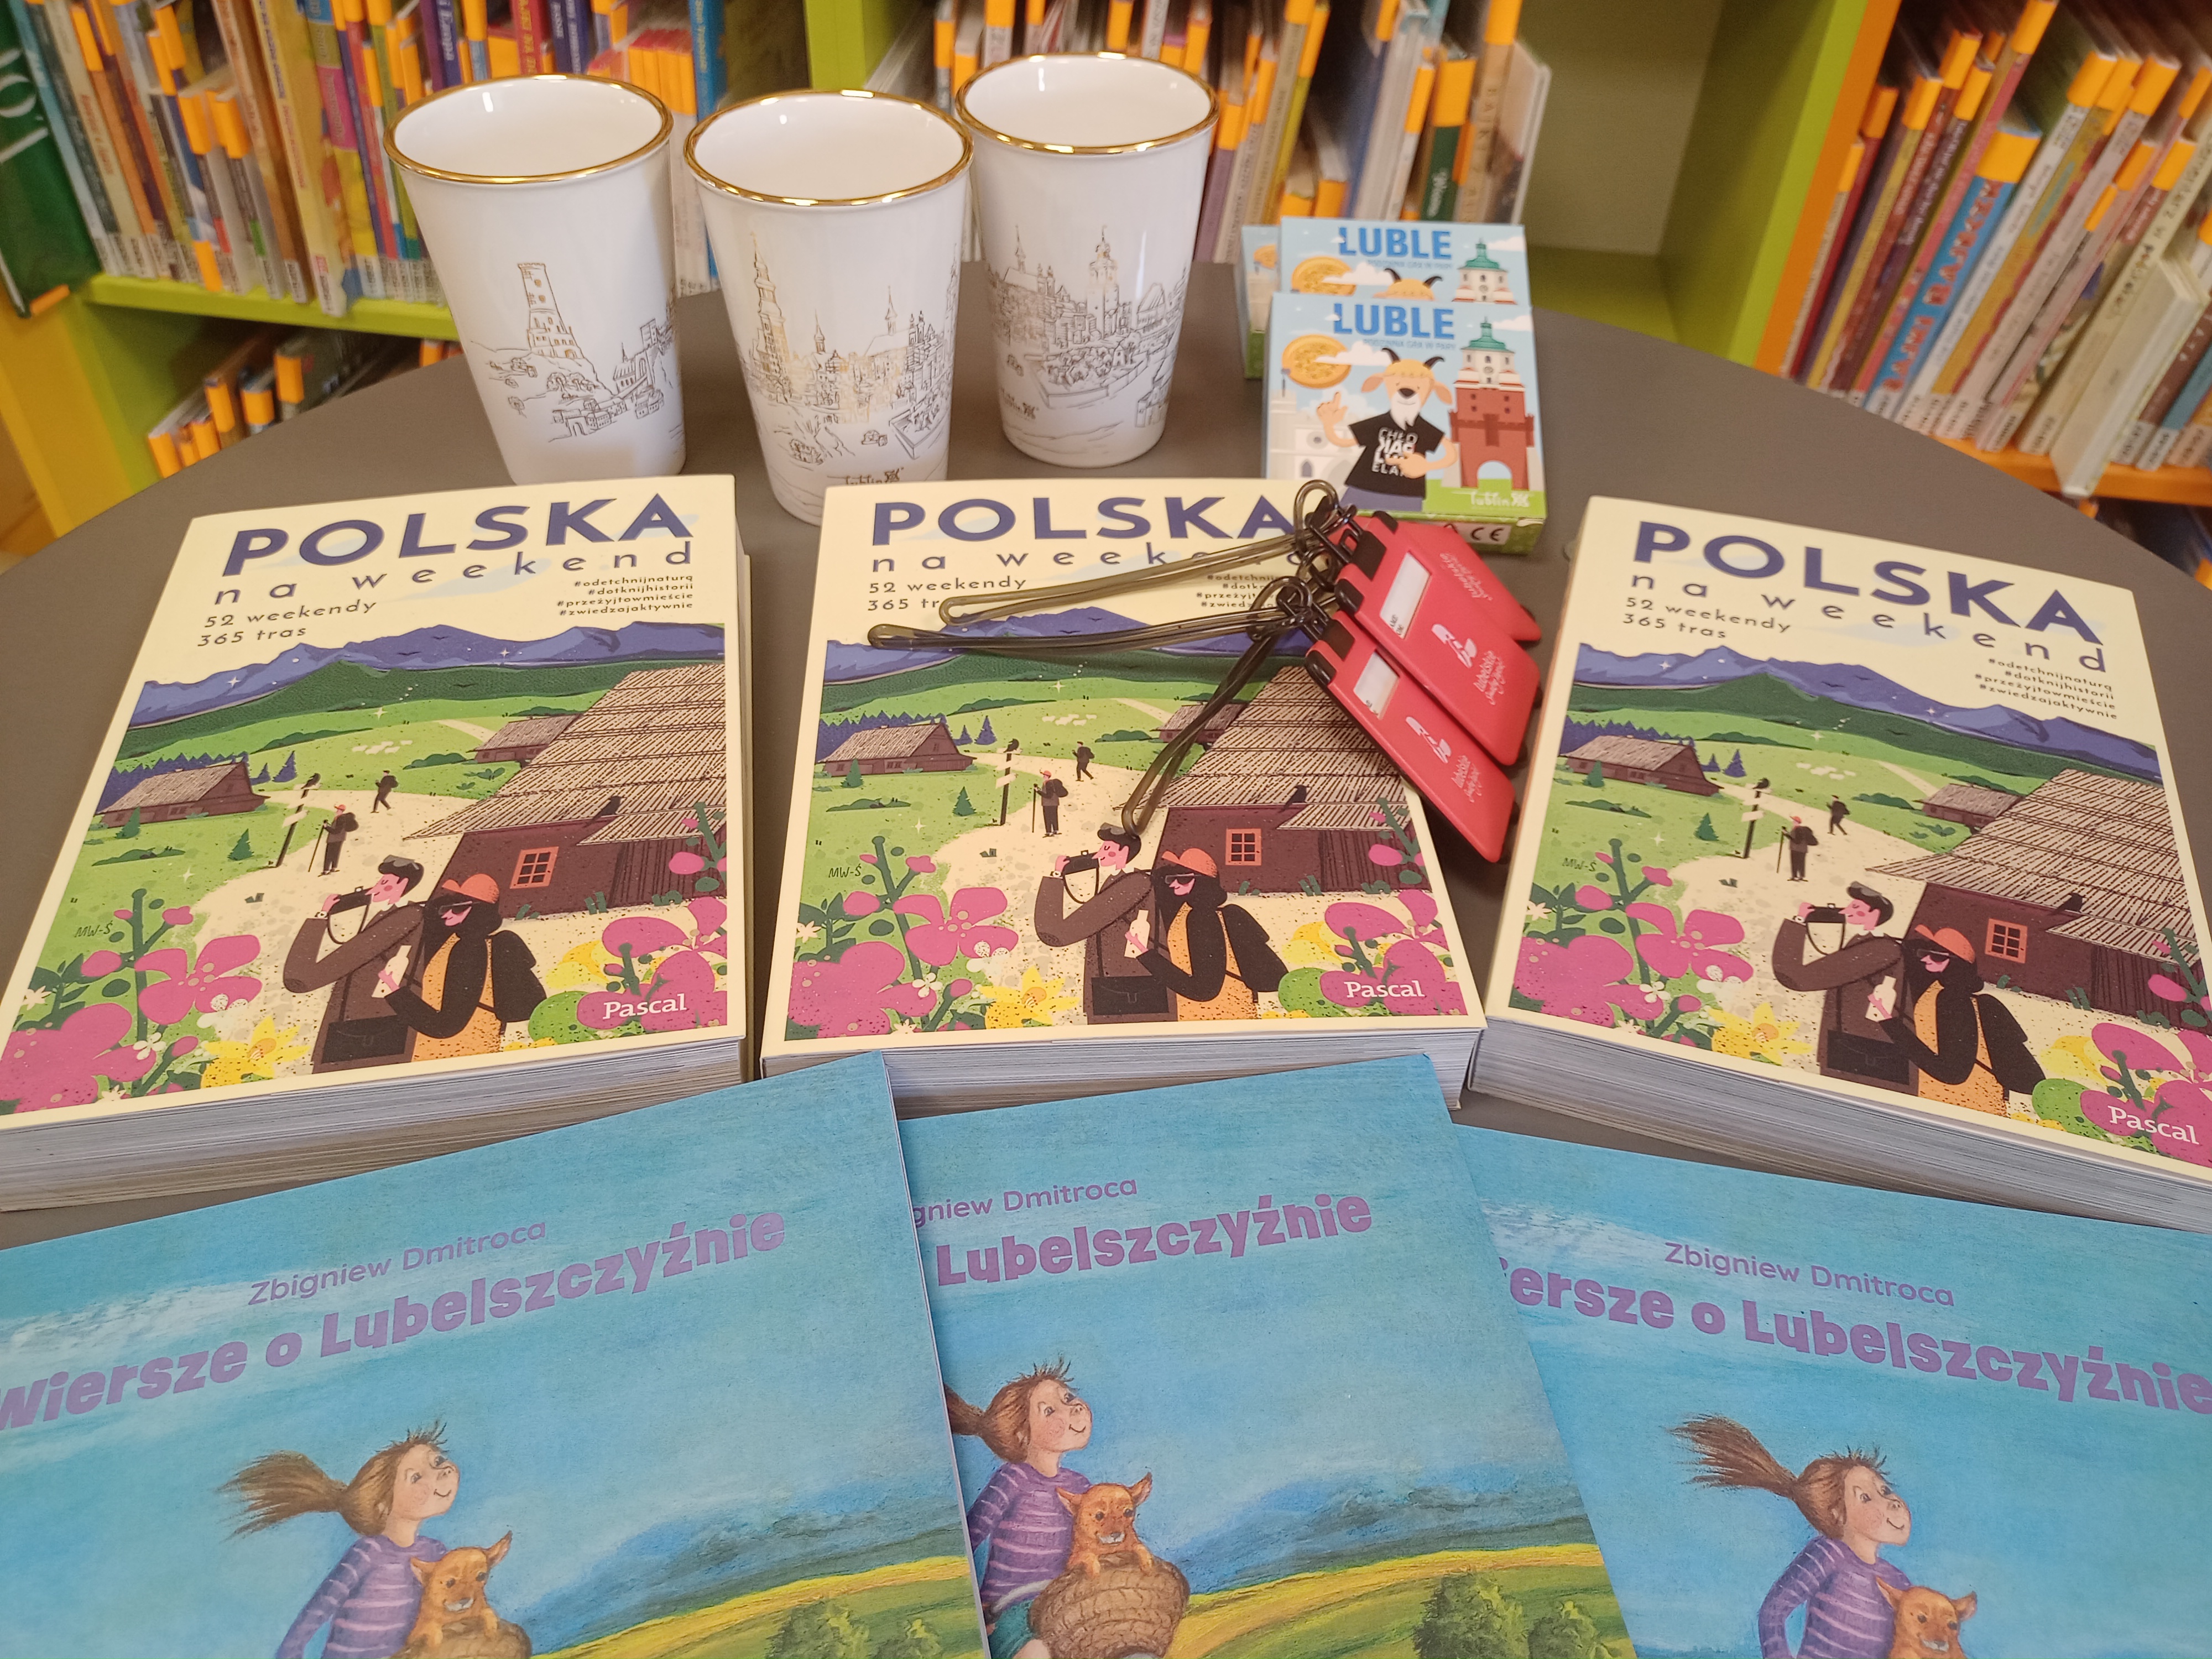 Nagrody w konkursie: 3 książki "Polska na weekend", 3 książki "Wiersze o Lubelszczyźnie", 3 kubki z grafiką panoramy lubelskiej, 3 gry karciane i 3 zawieszki do walizki.